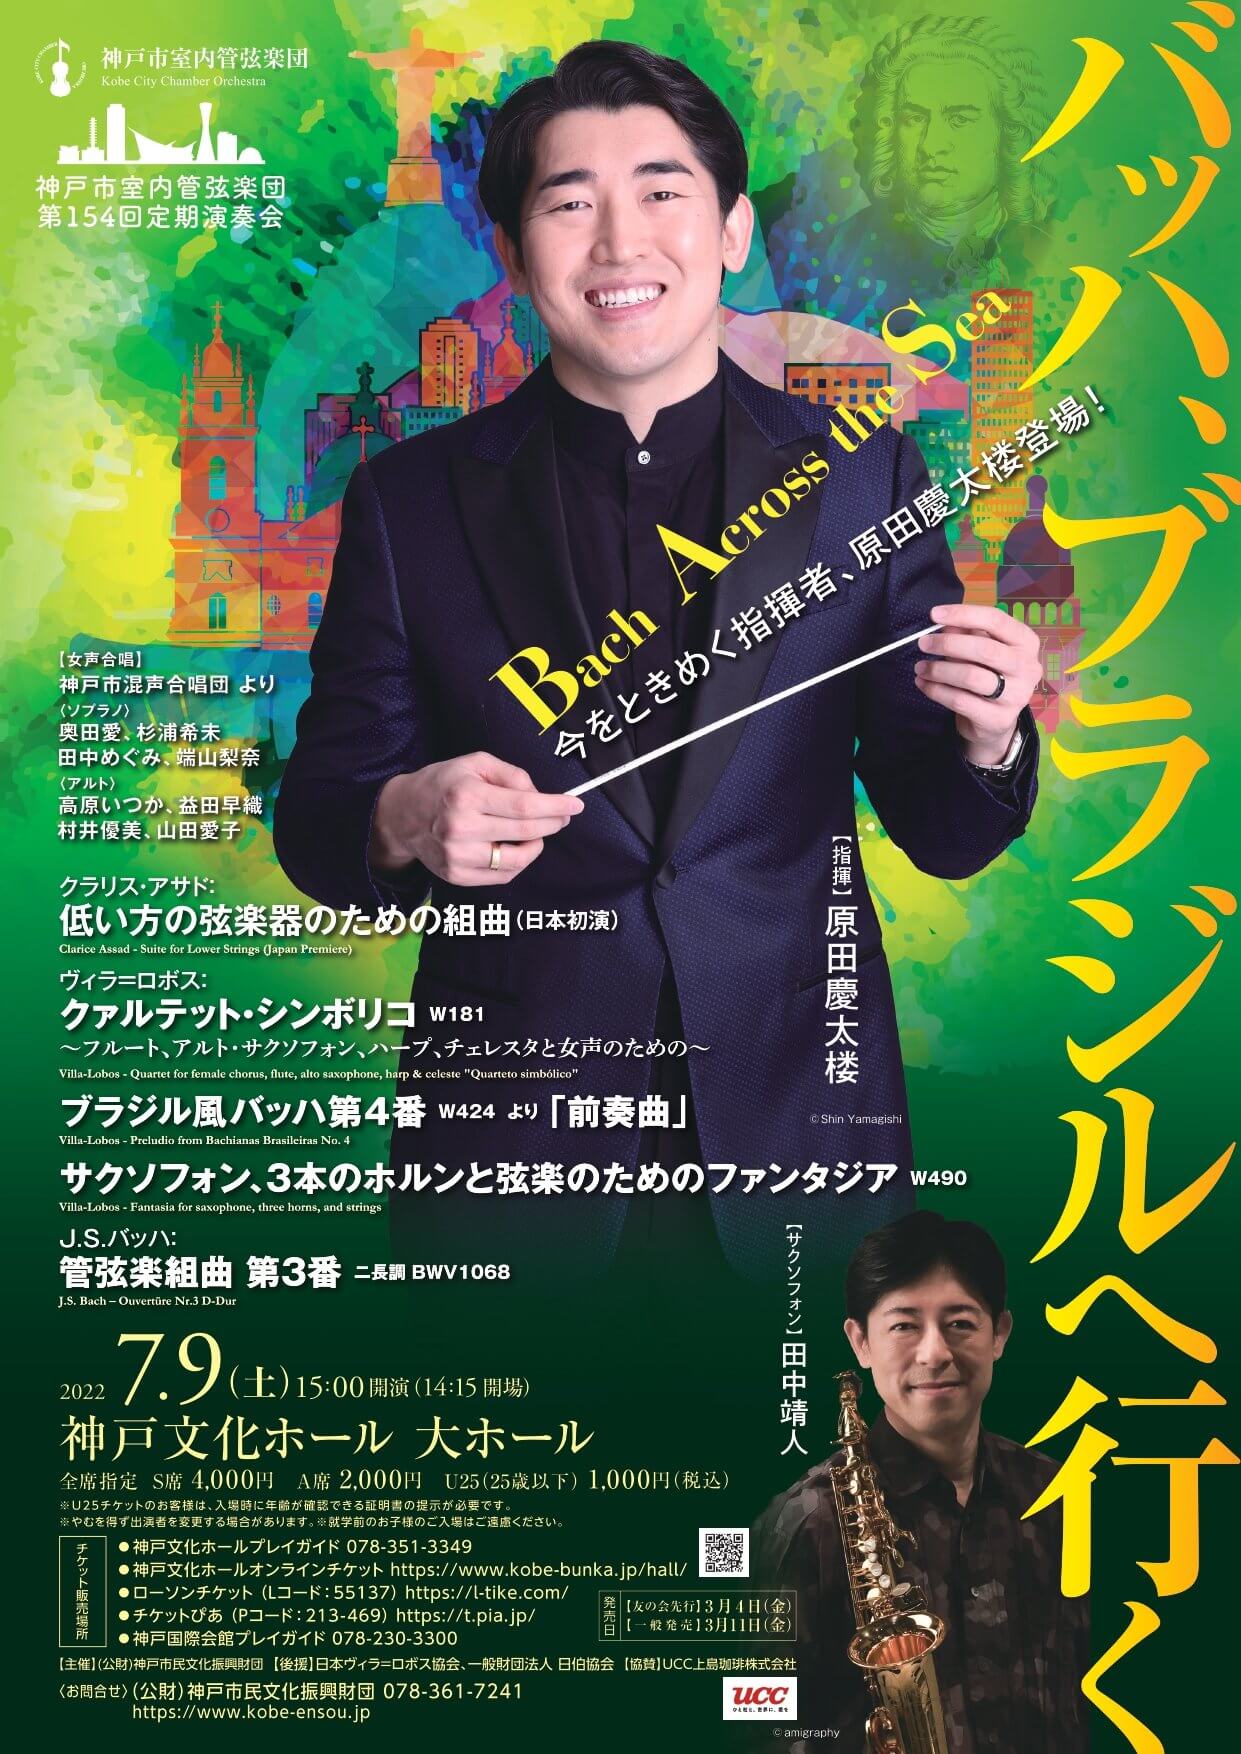 神戸市室内管弦楽団 第154回定期演奏会〈バッハ、ブラジルへ行く〉